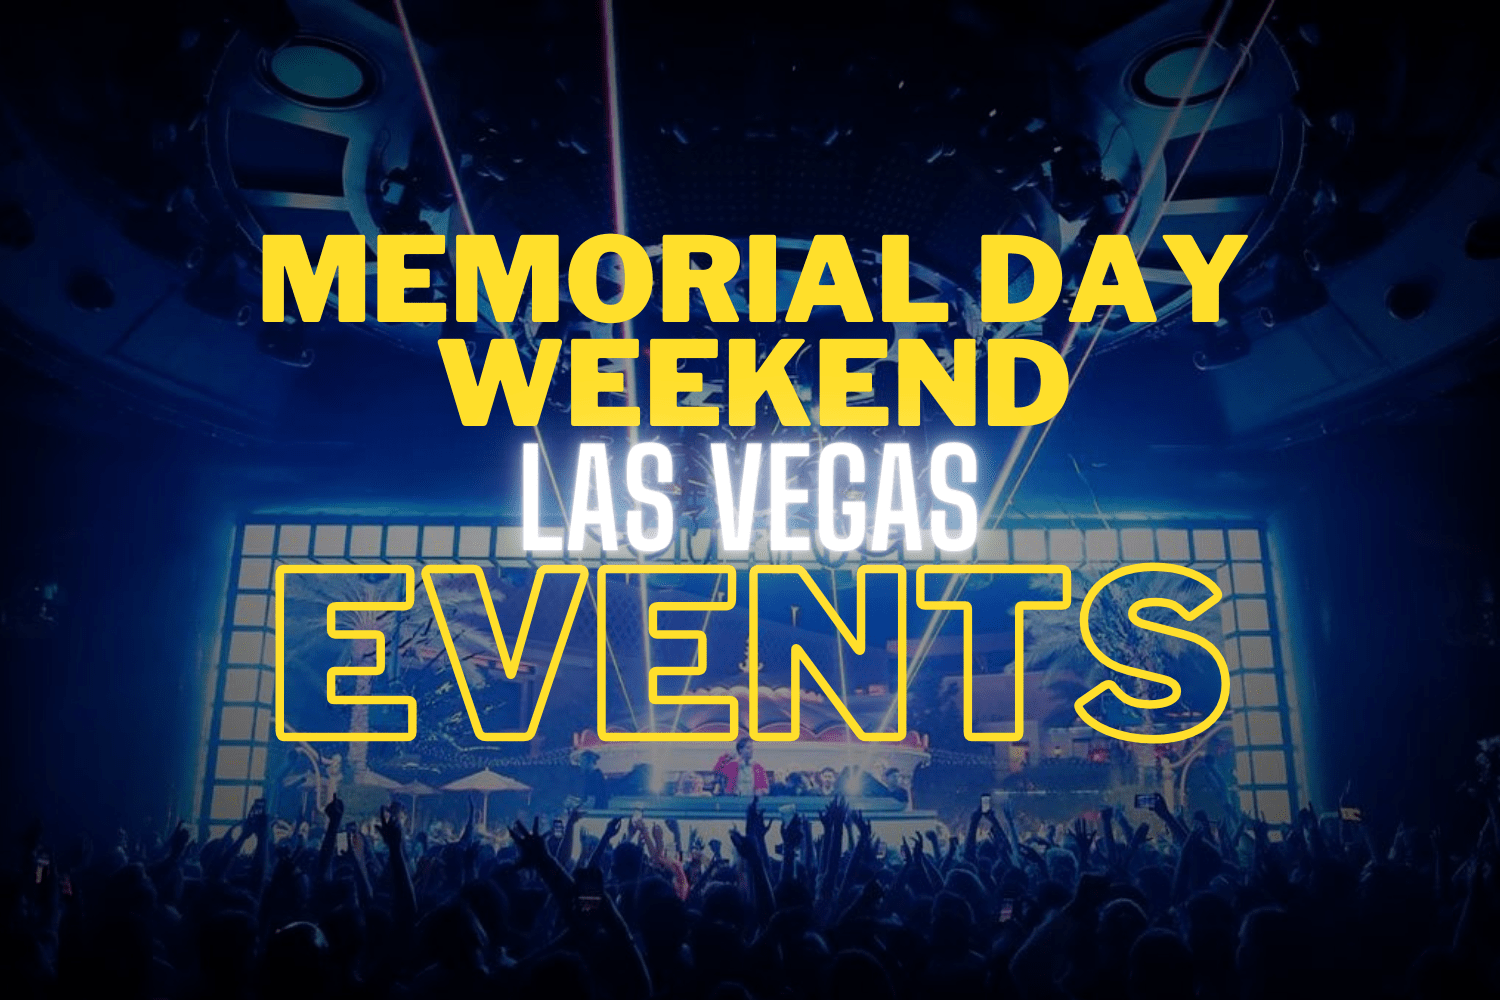 Las Vegas Memorial day weekend events